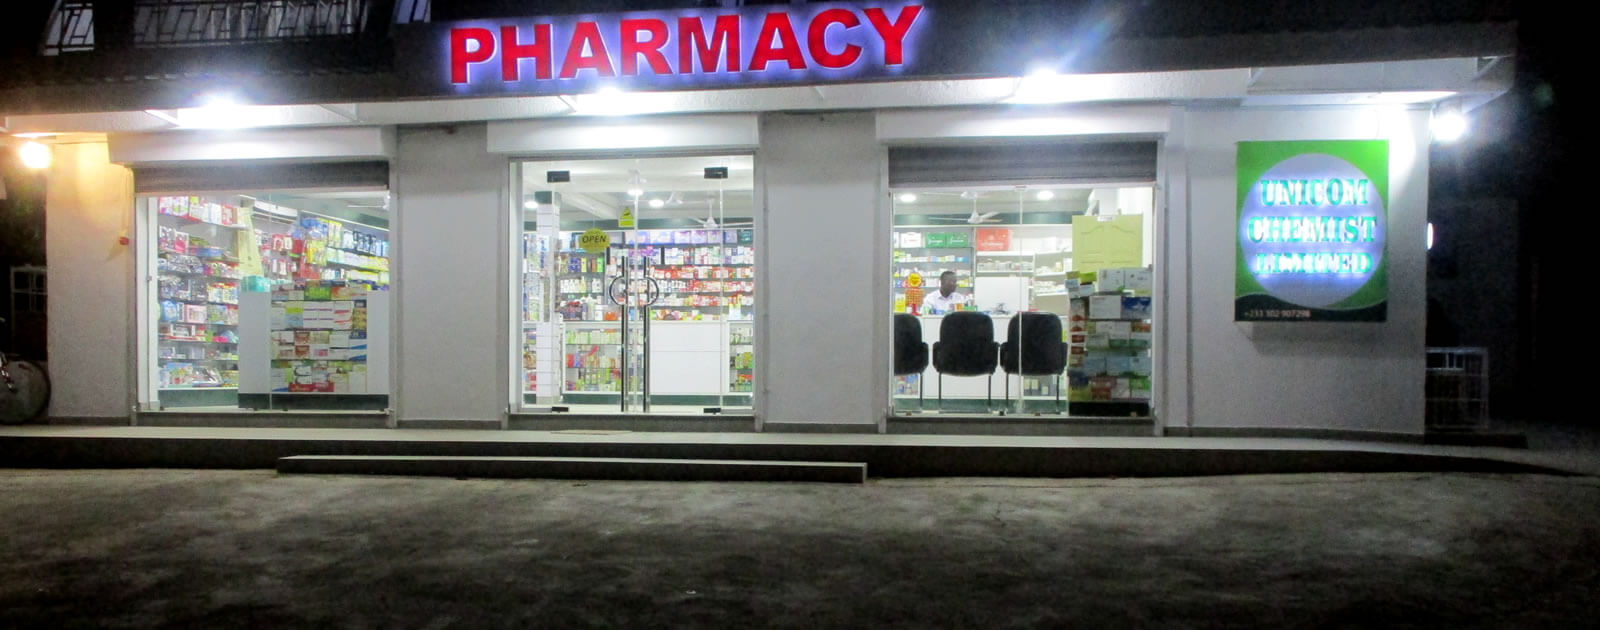 How To Order Medicine In Ghana Using Online Pharmacies